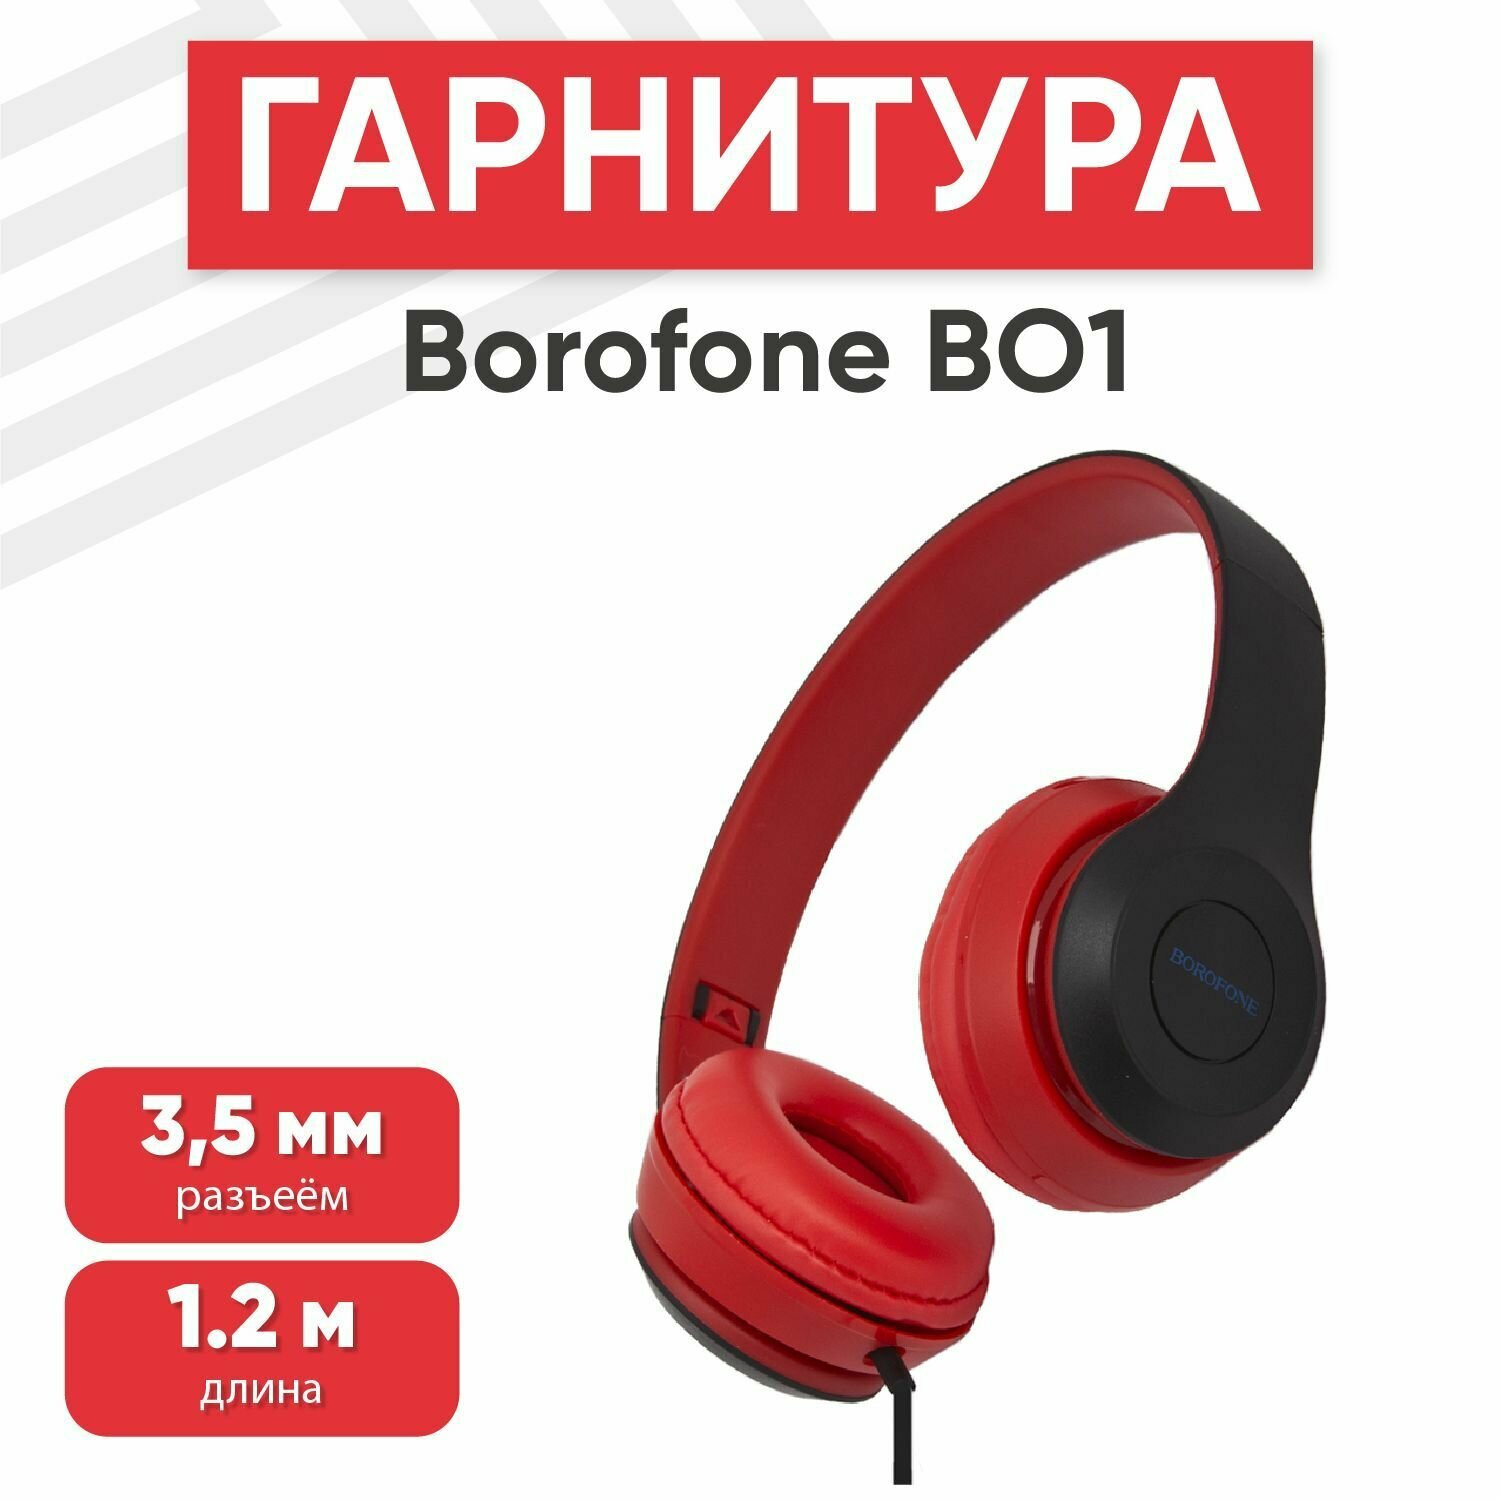 Наушники проводные с микрофоном Borofone BO5 Star sound, MiniJack 3.5мм, 1.2 метра, красные